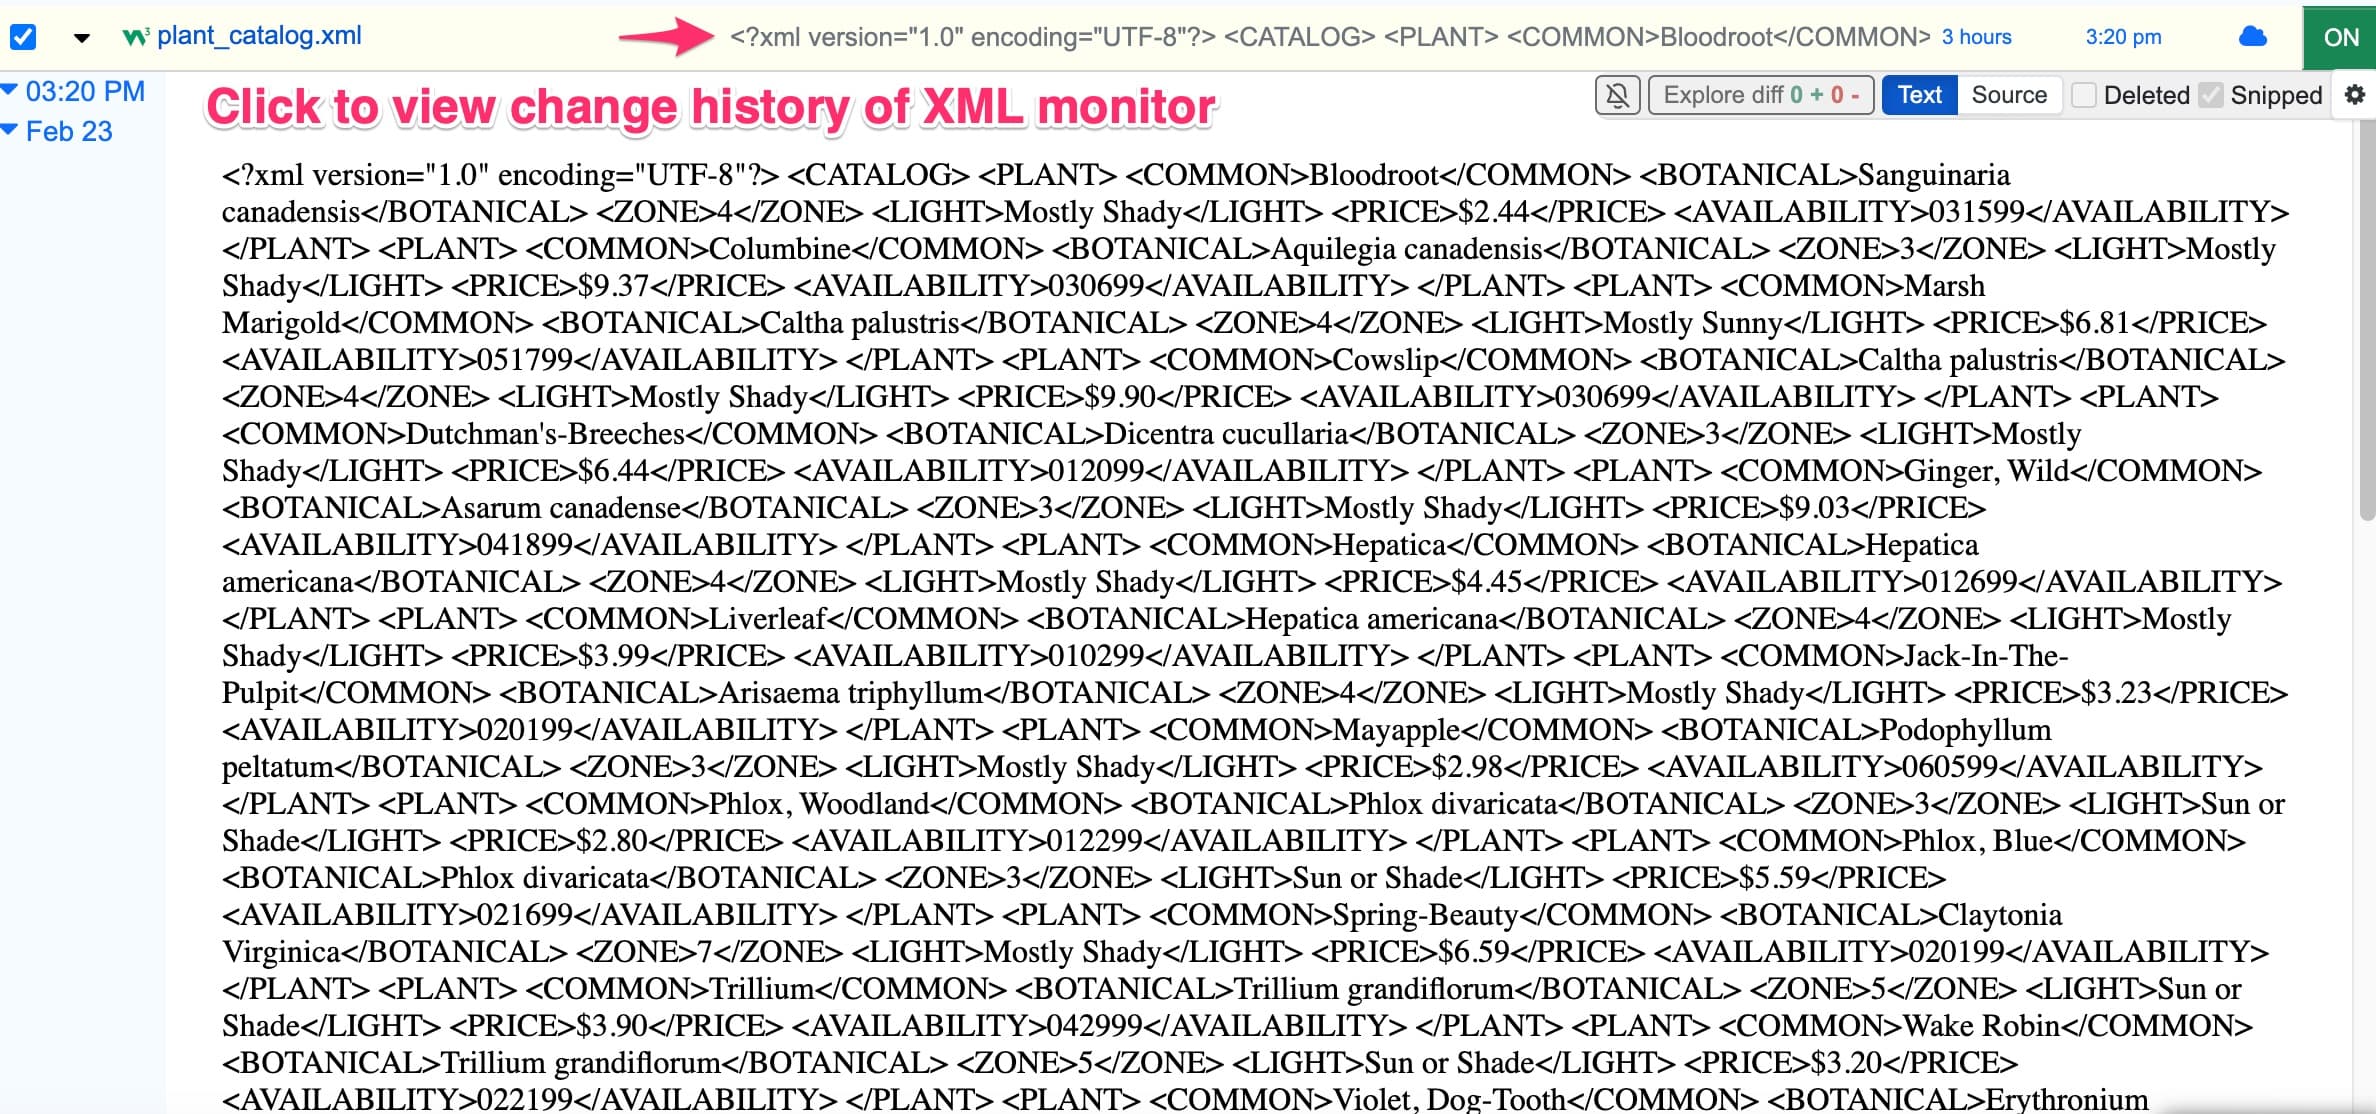 Adding XML monitor